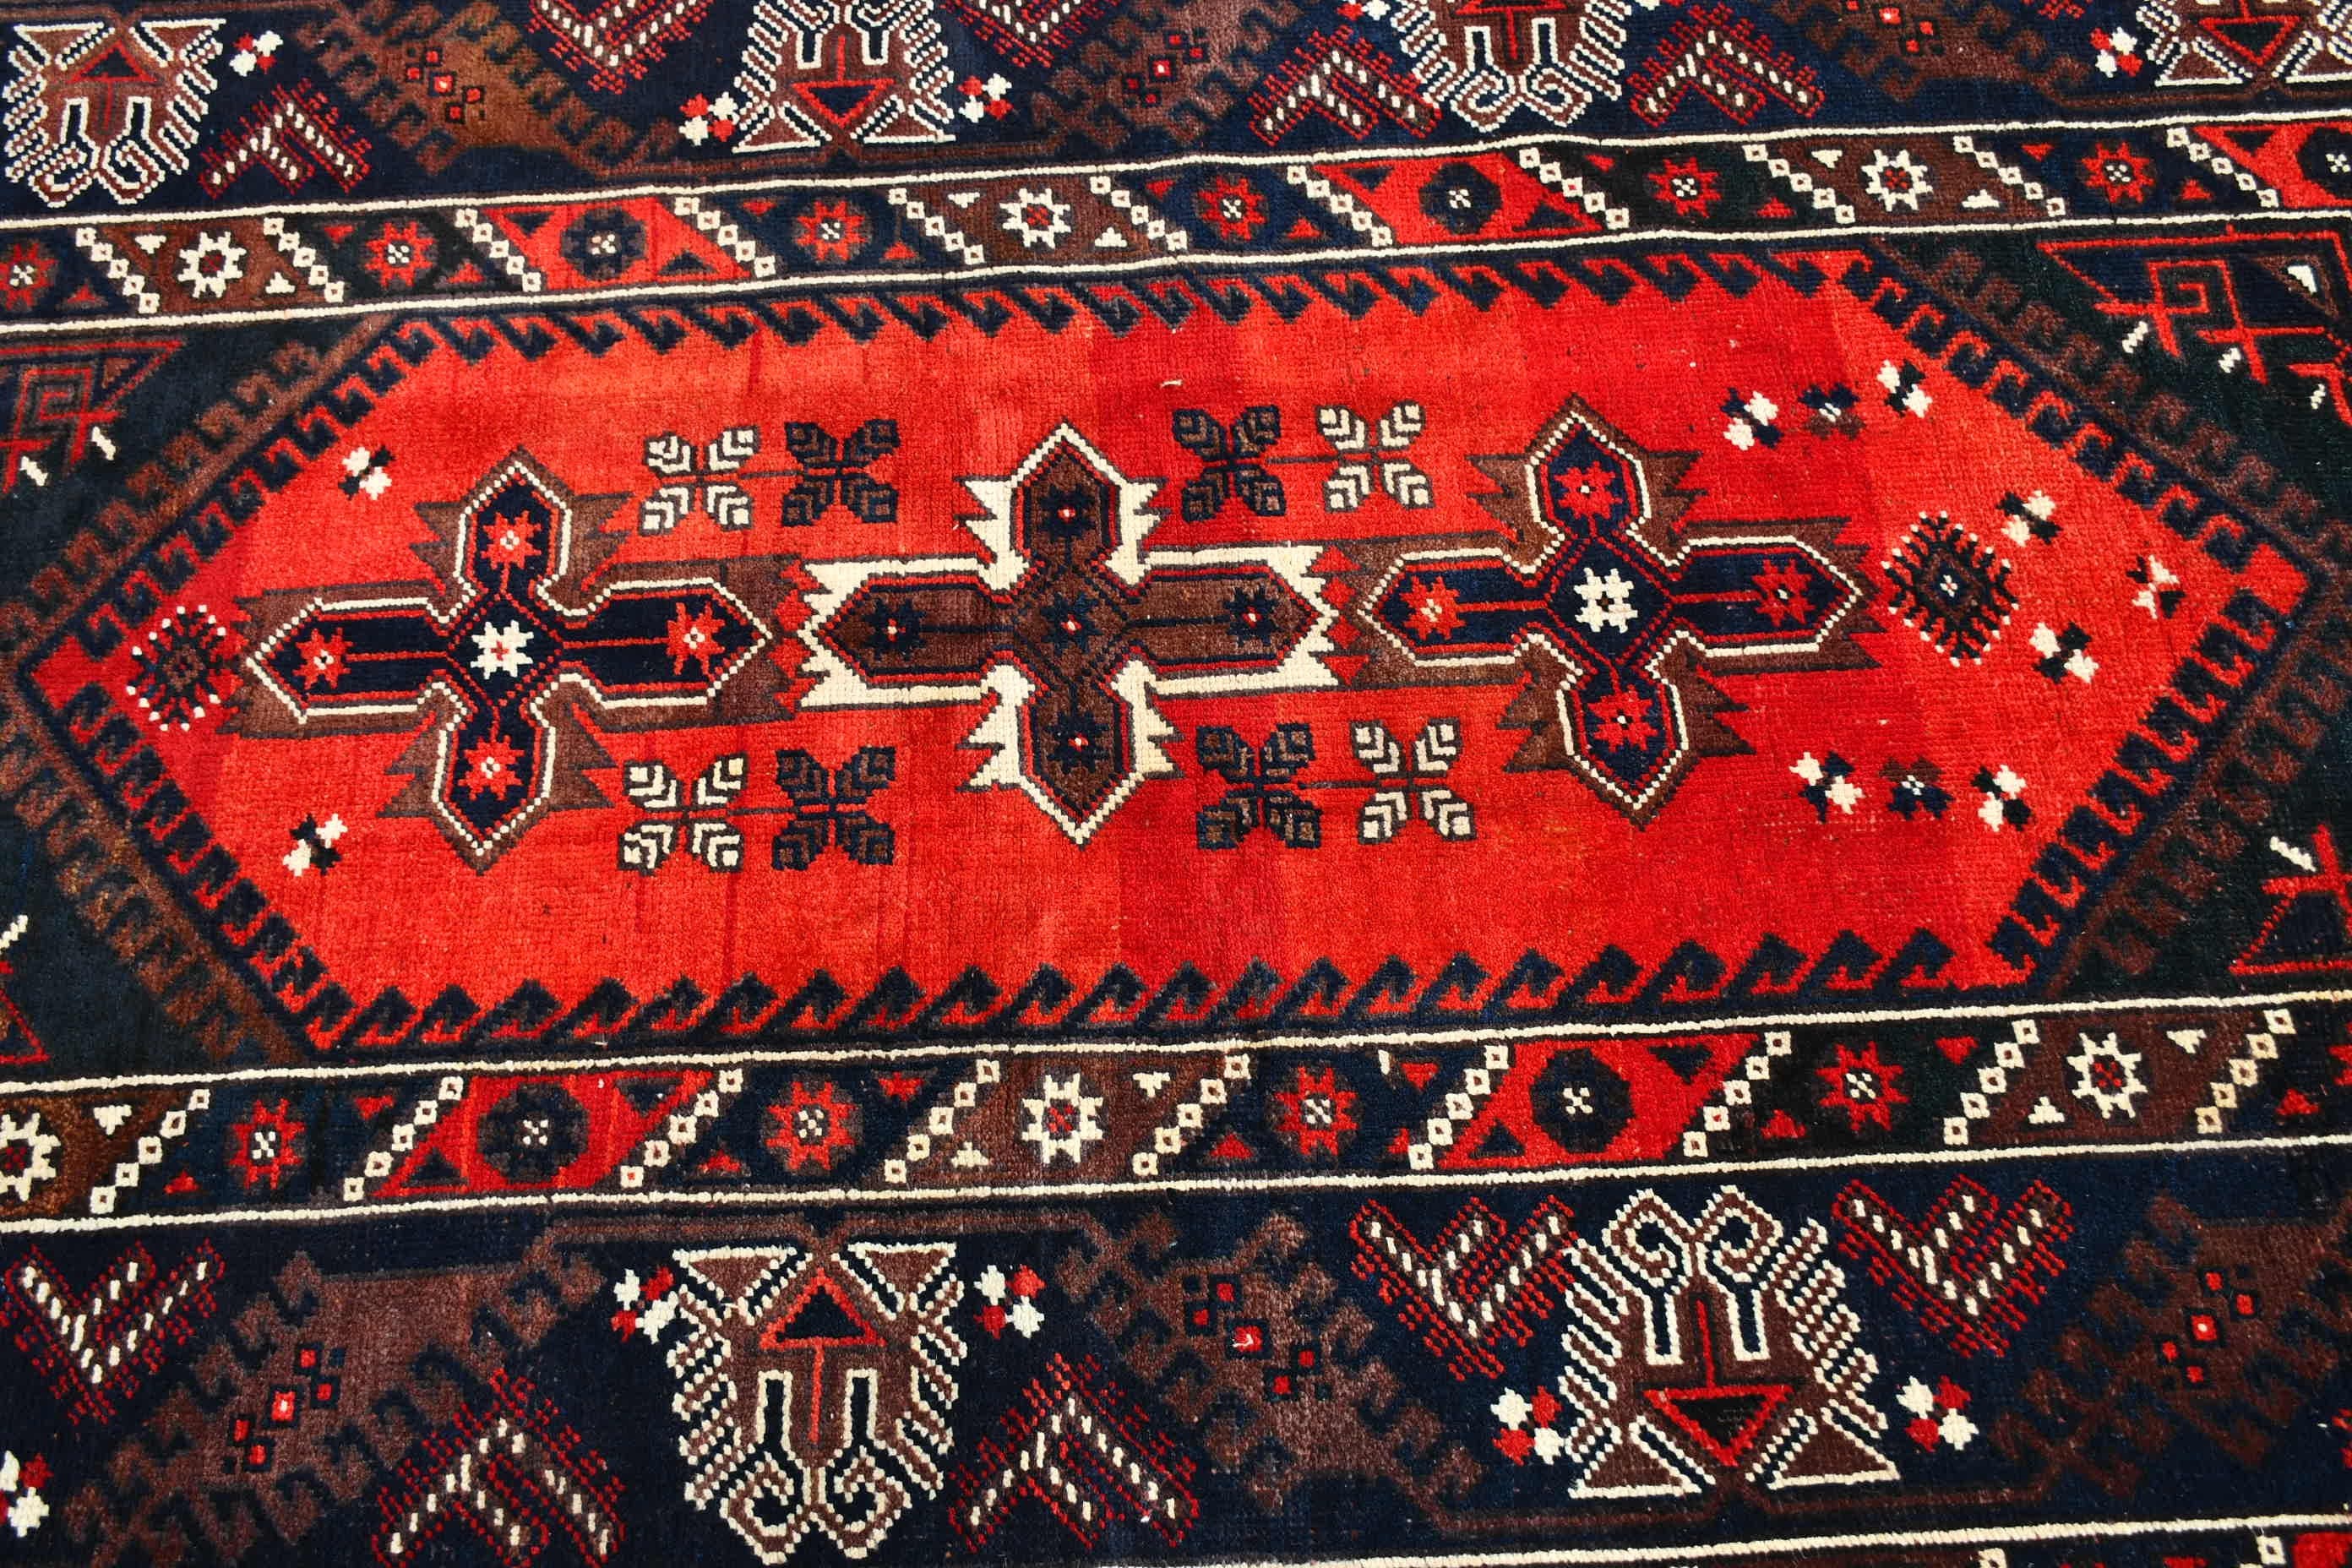 Floor Rug, Bedroom Rugs, Flatweave Rug, Vintage Rug, Blue Moroccan Rug, Rugs for Indoor, Cool Rug, Turkish Rug, 4.3x7.4 ft Area Rugs